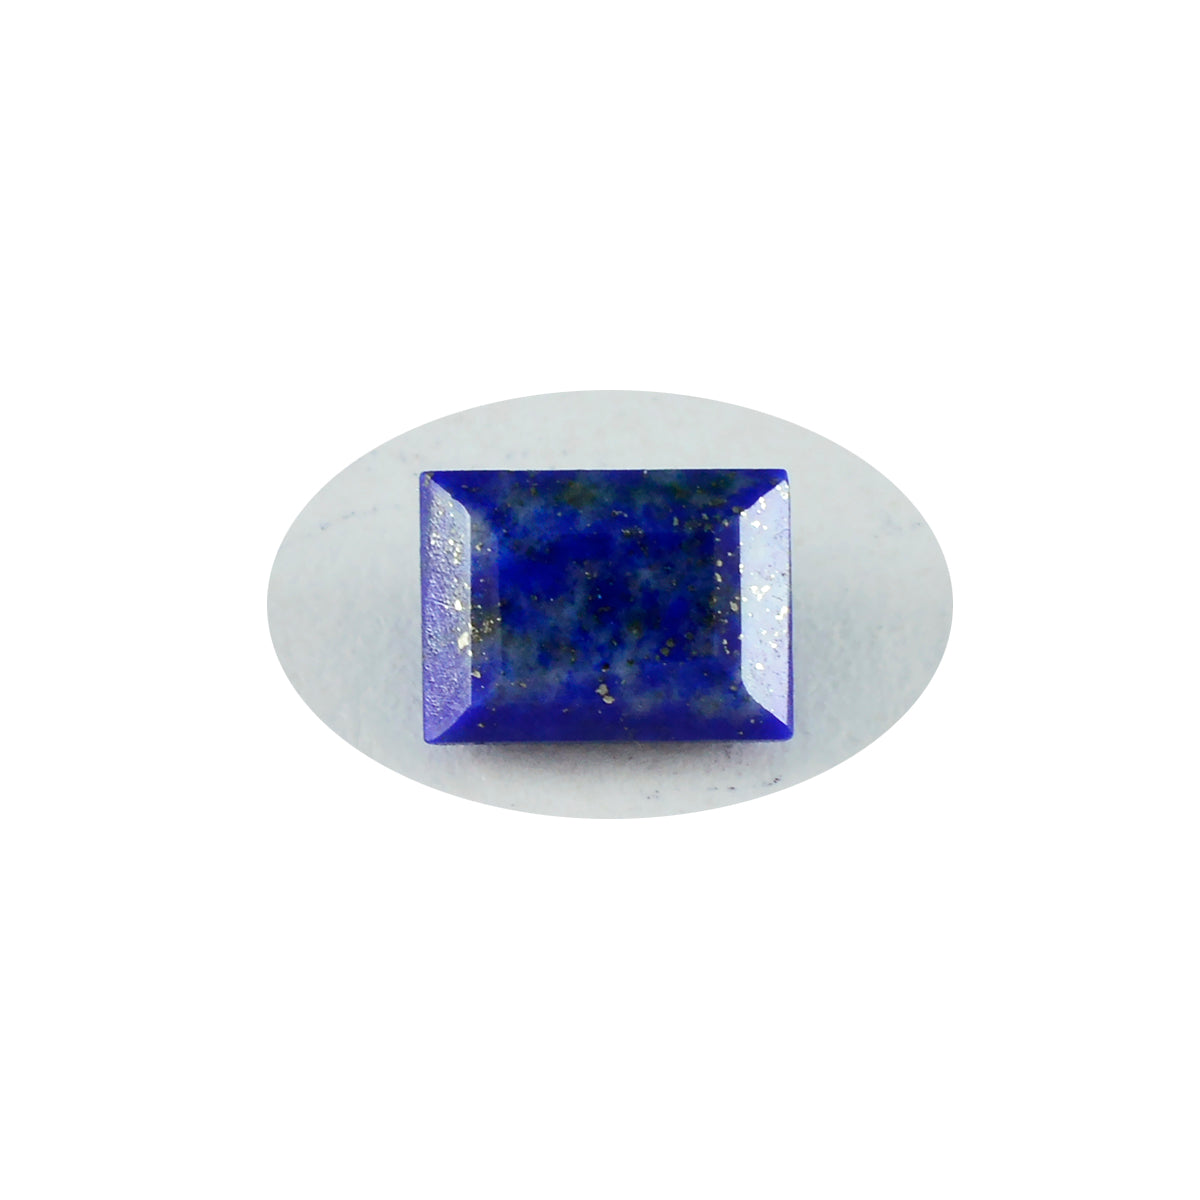 riyogems 1 шт. настоящий синий лазурит ограненный 10x12 мм восьмиугольной формы отличное качество свободный драгоценный камень